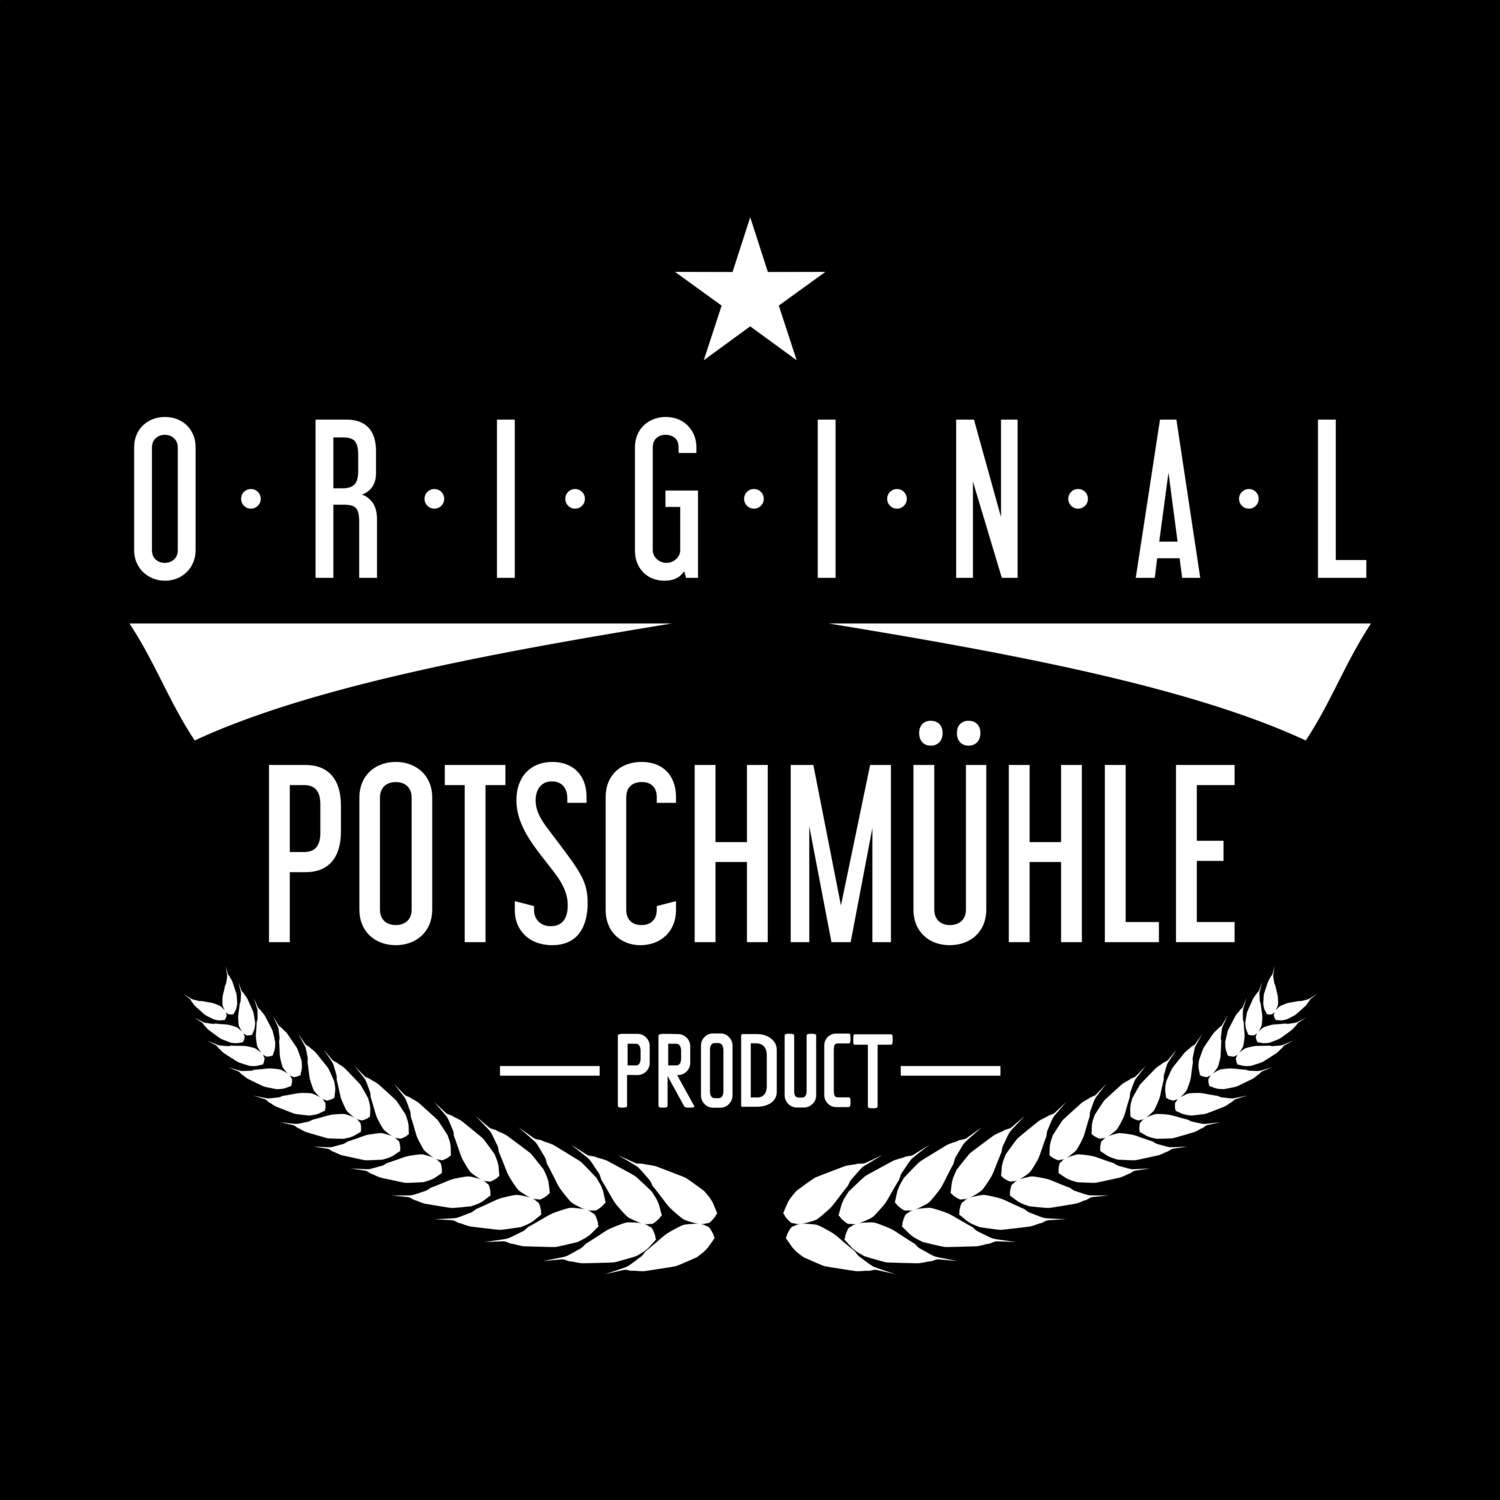 Potschmühle T-Shirt »Original Product«